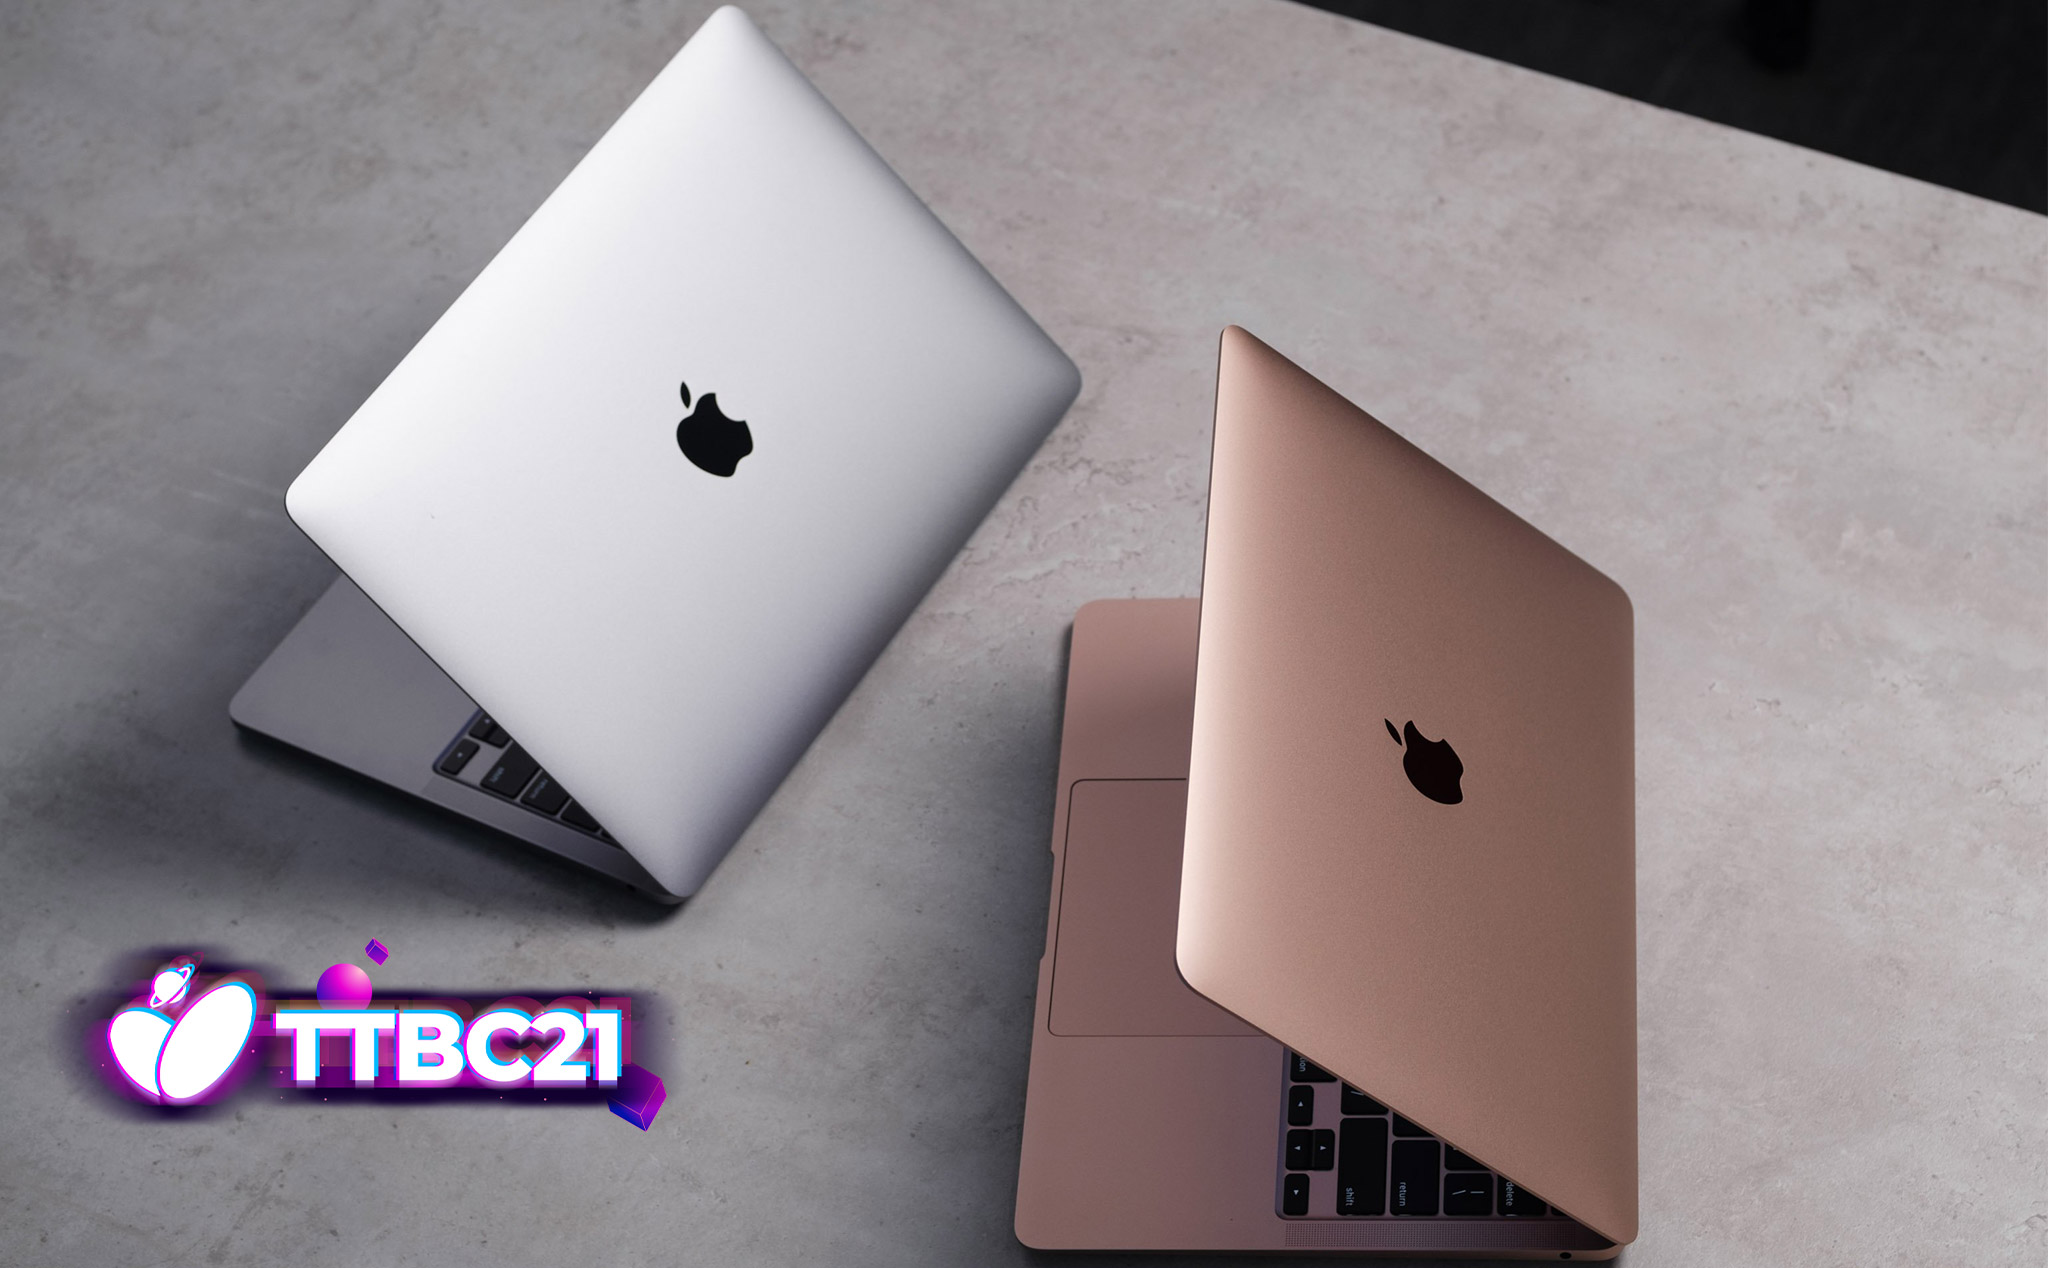 #TTBC21: chia sẻ lý do chọn, trúng MacBook Air M1 và nhiều quà khác...